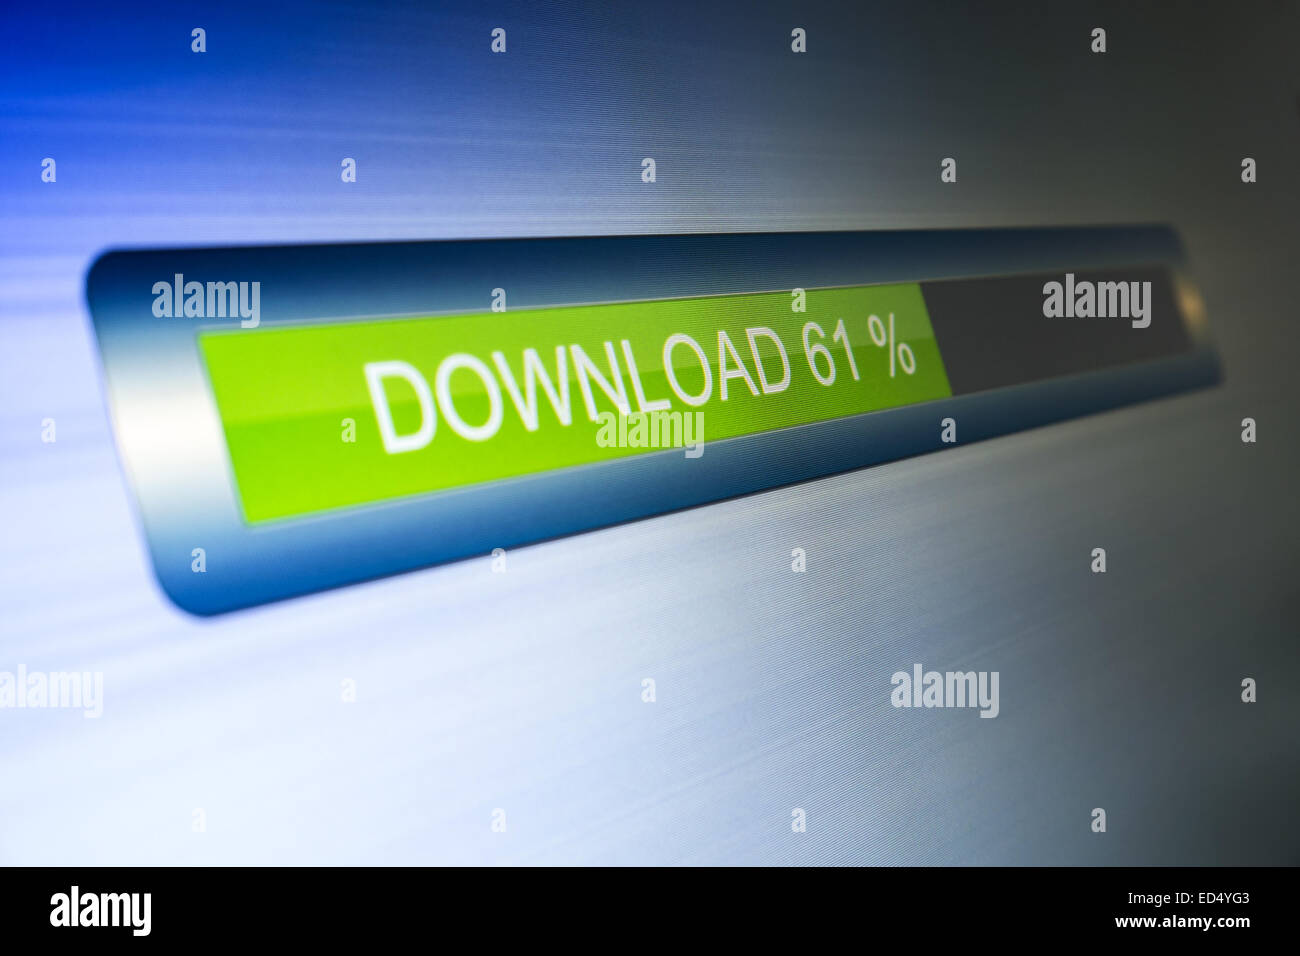 Download-Fortschritt auf dem led-Bildschirm (Abbildung) Stockfoto